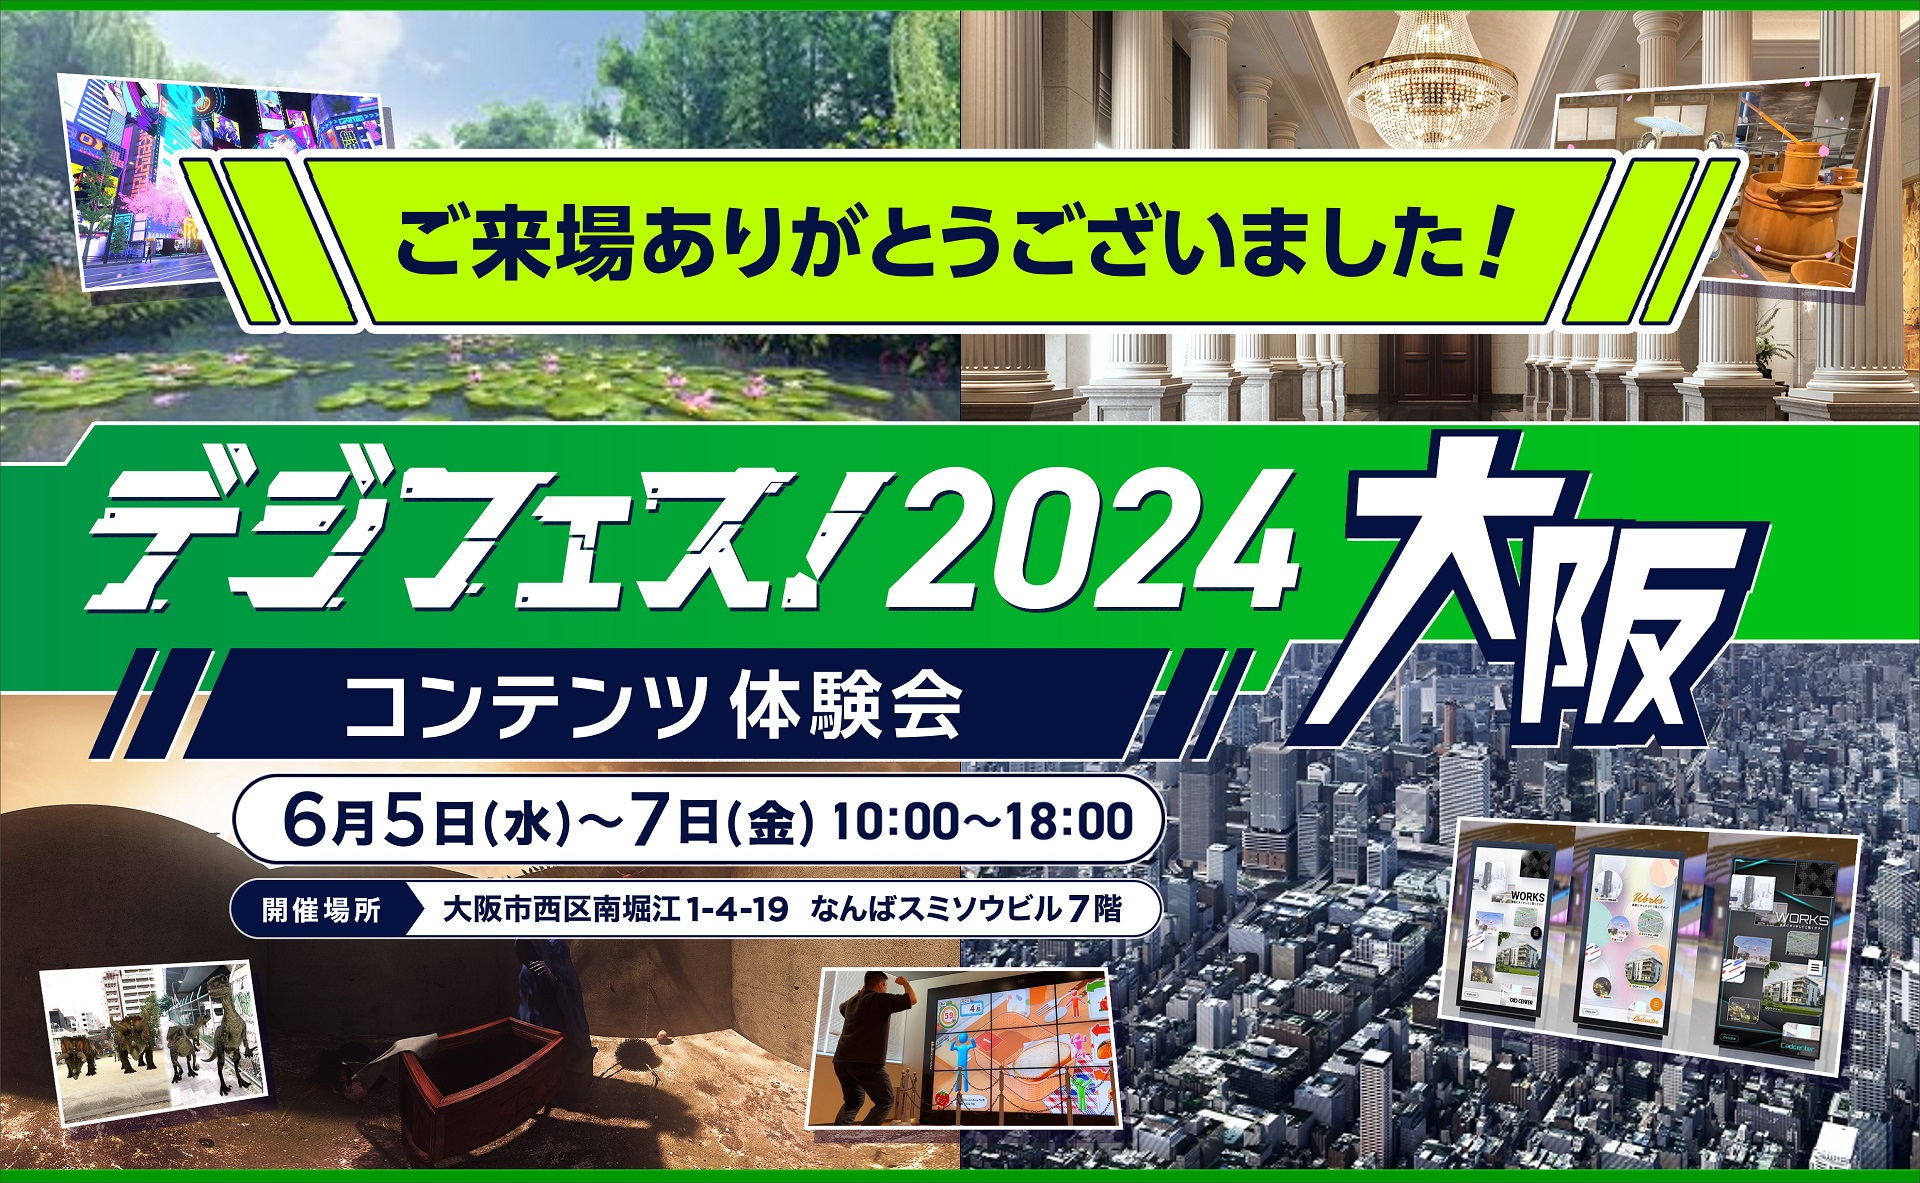 「デジフェス! 2024 大阪」を開催しました